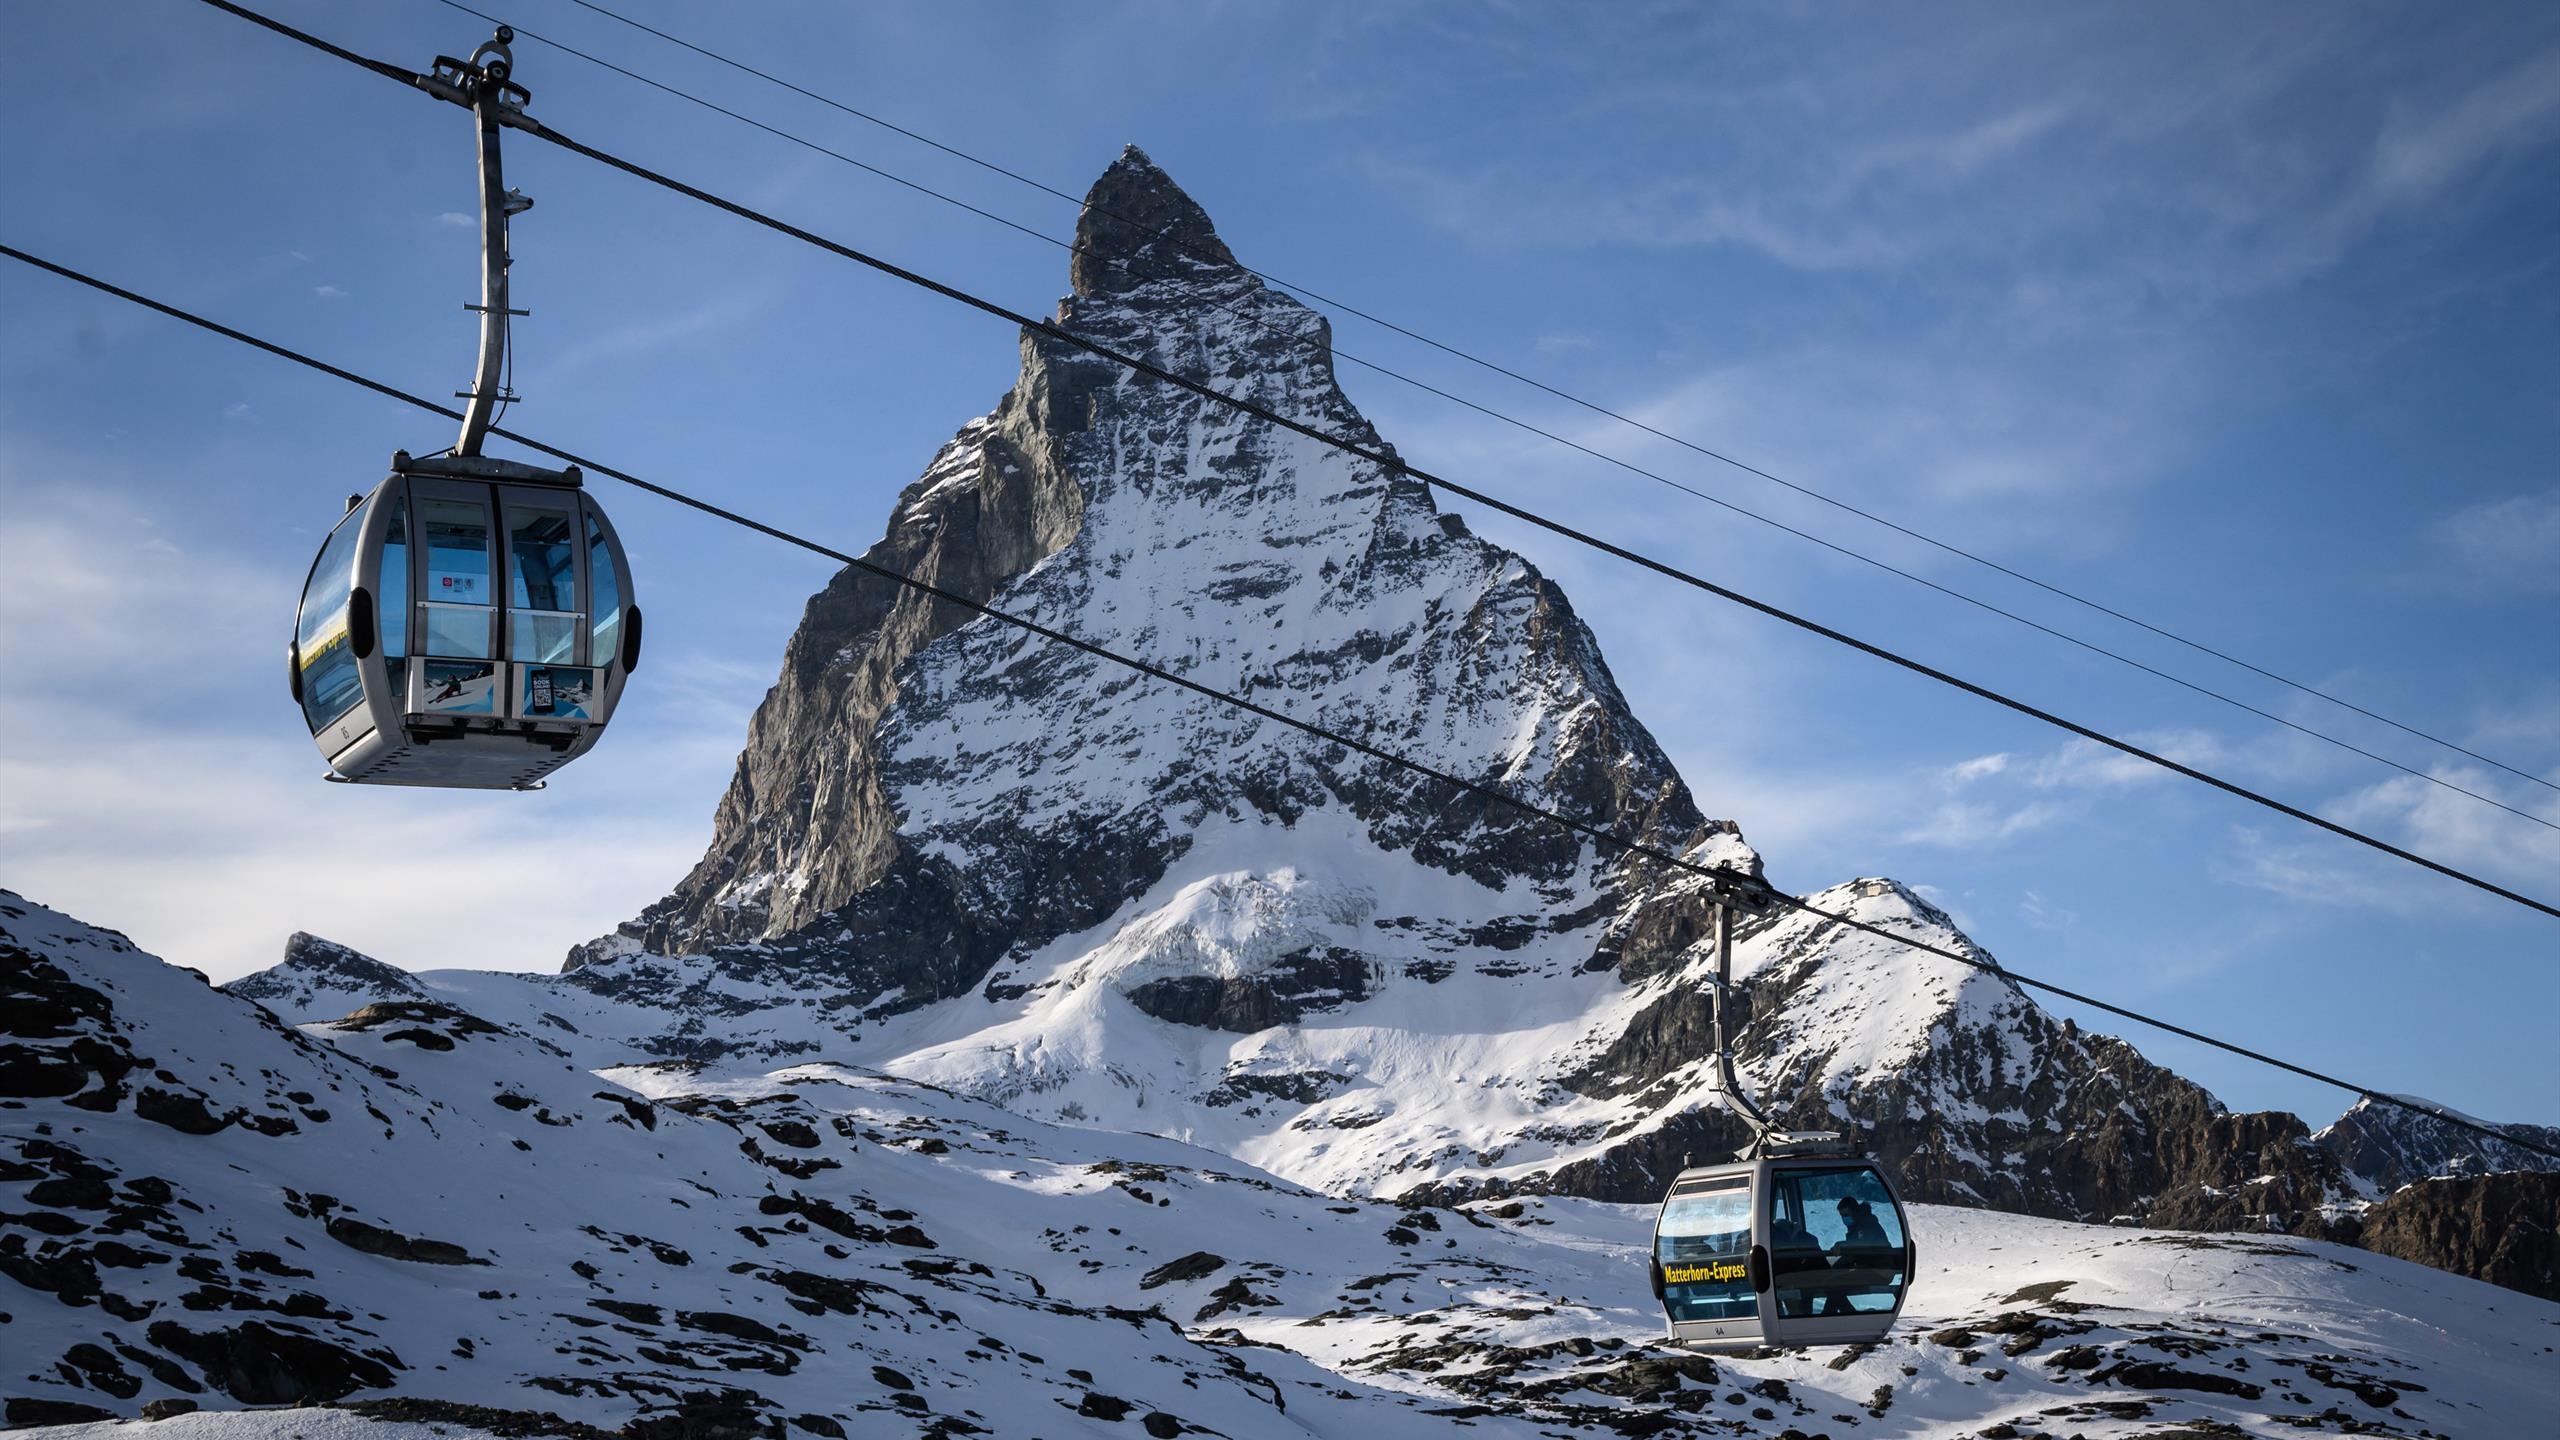 Hans Knauss, Matterhorn descent, Critique, Alpine experience, 2560x1440 HD Desktop